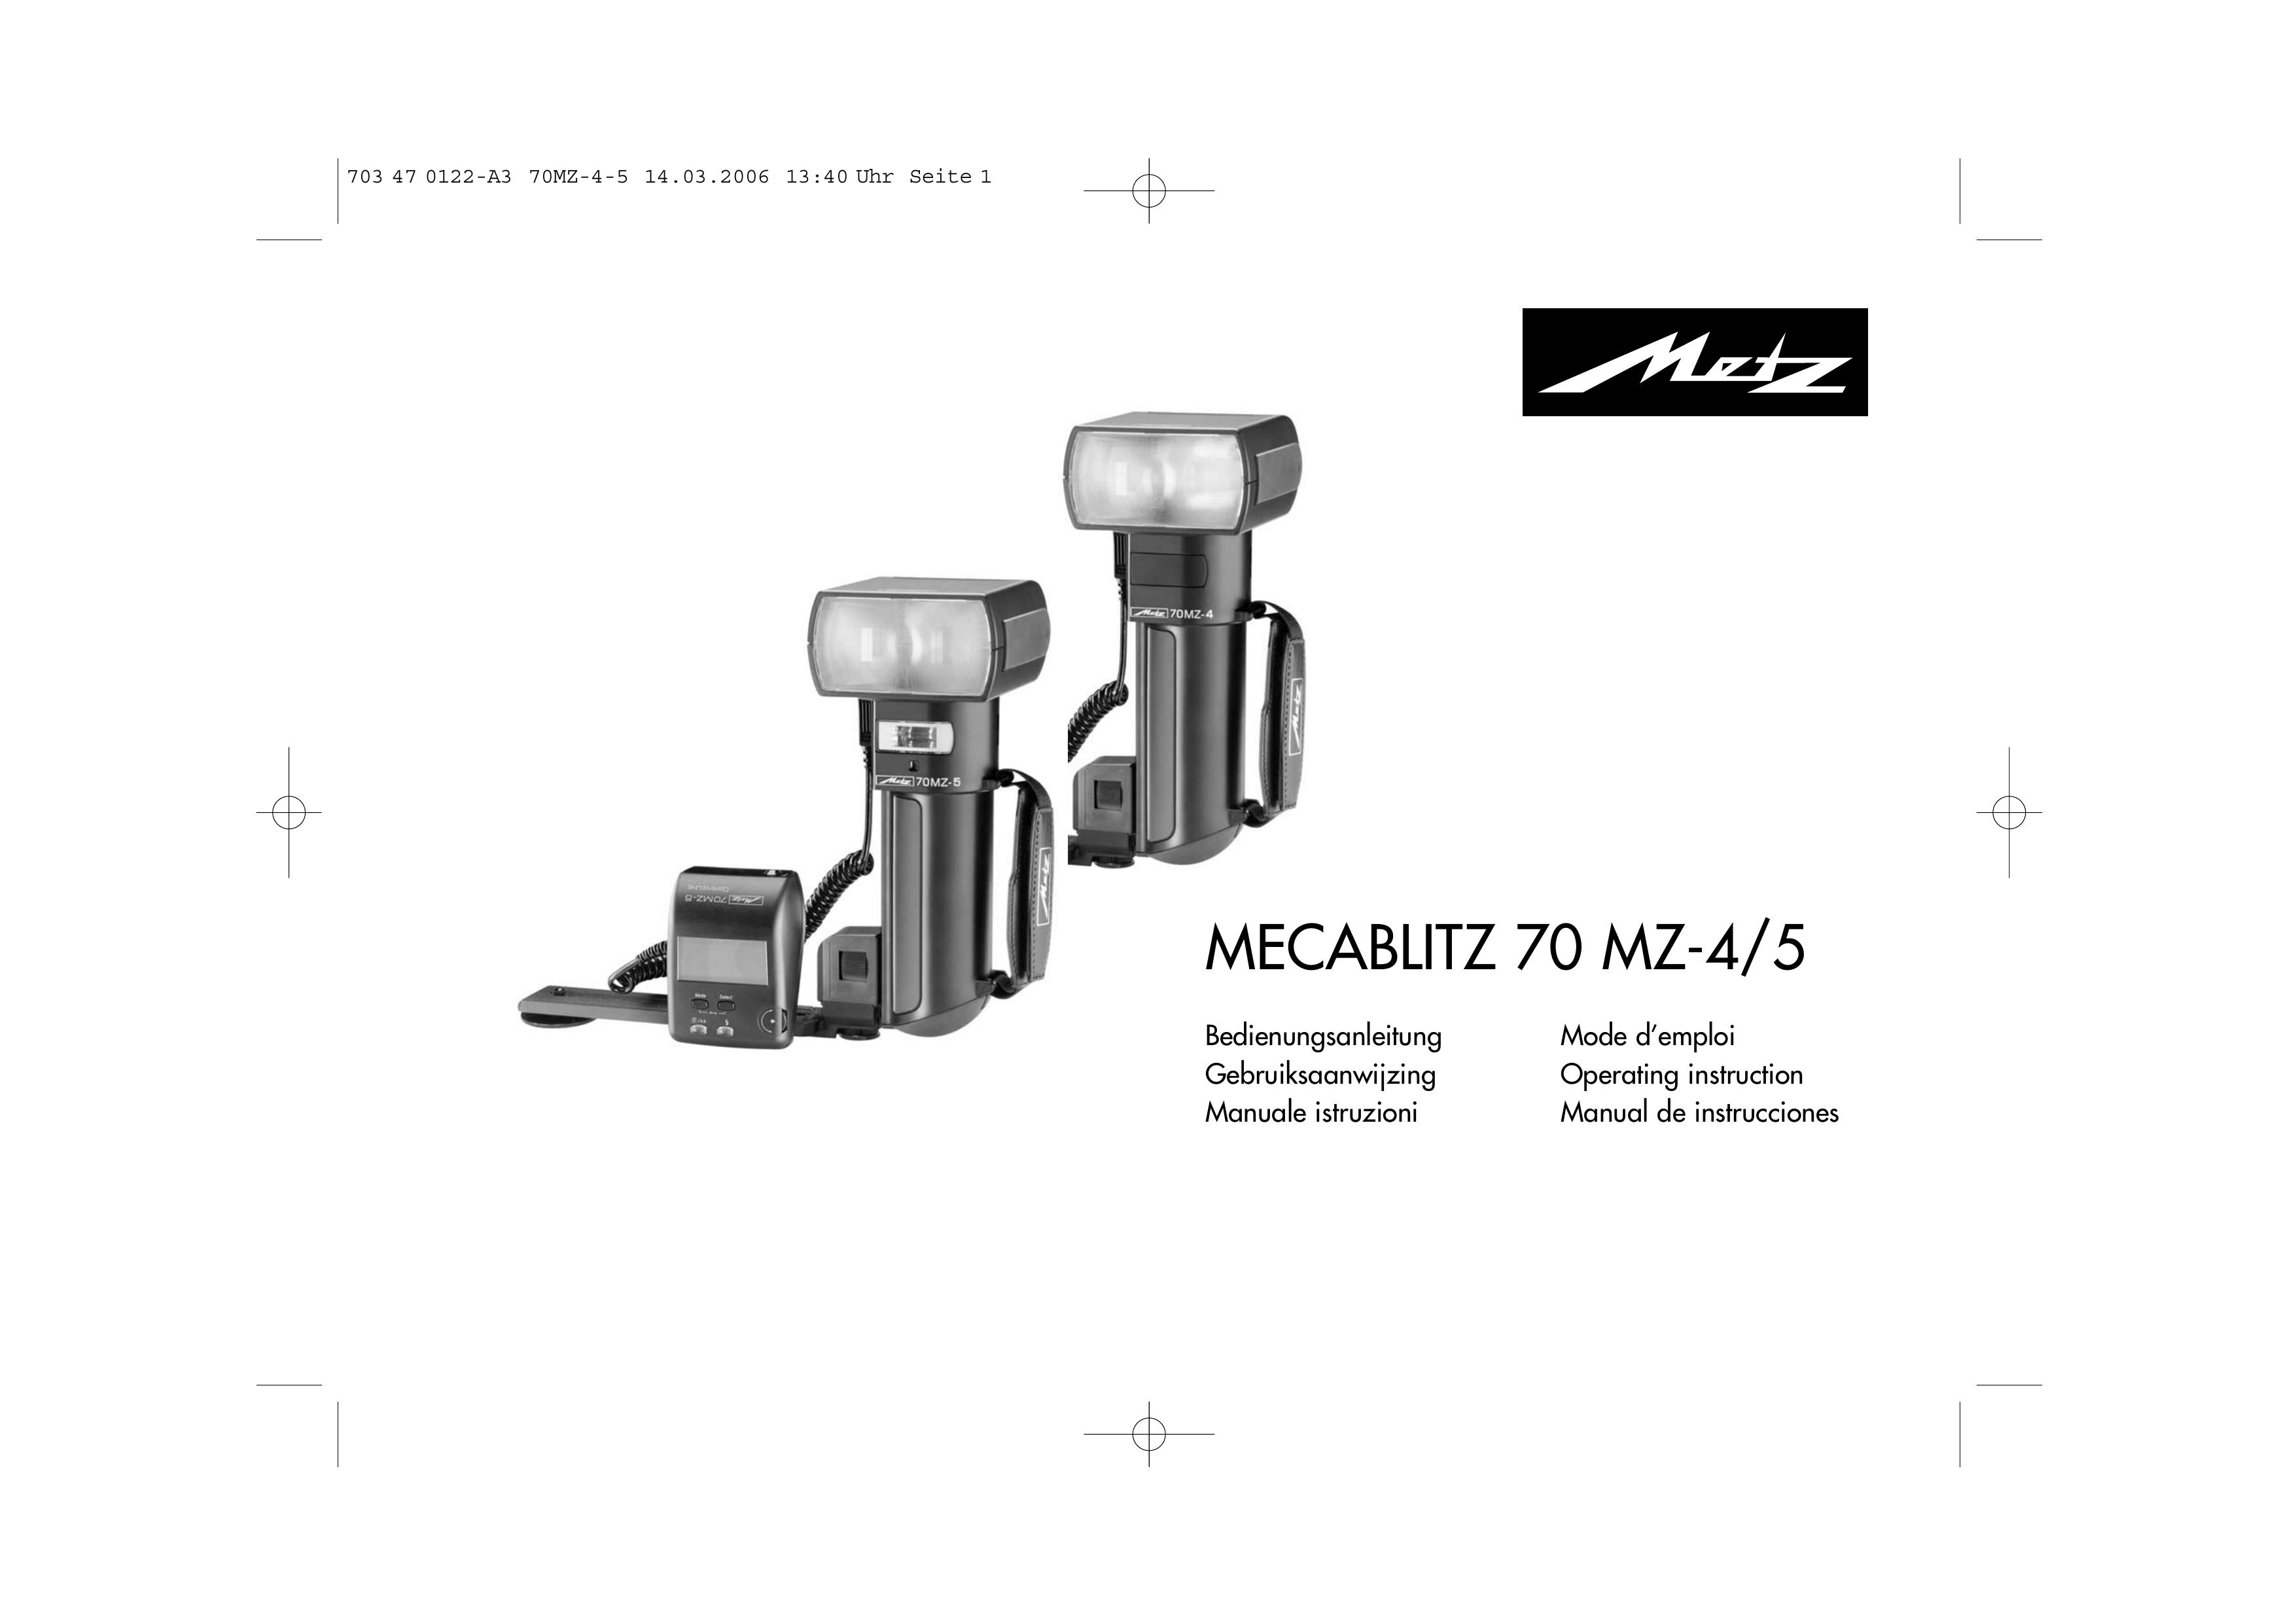 Metz 70 MZ-4/5 Digital Camera User Manual